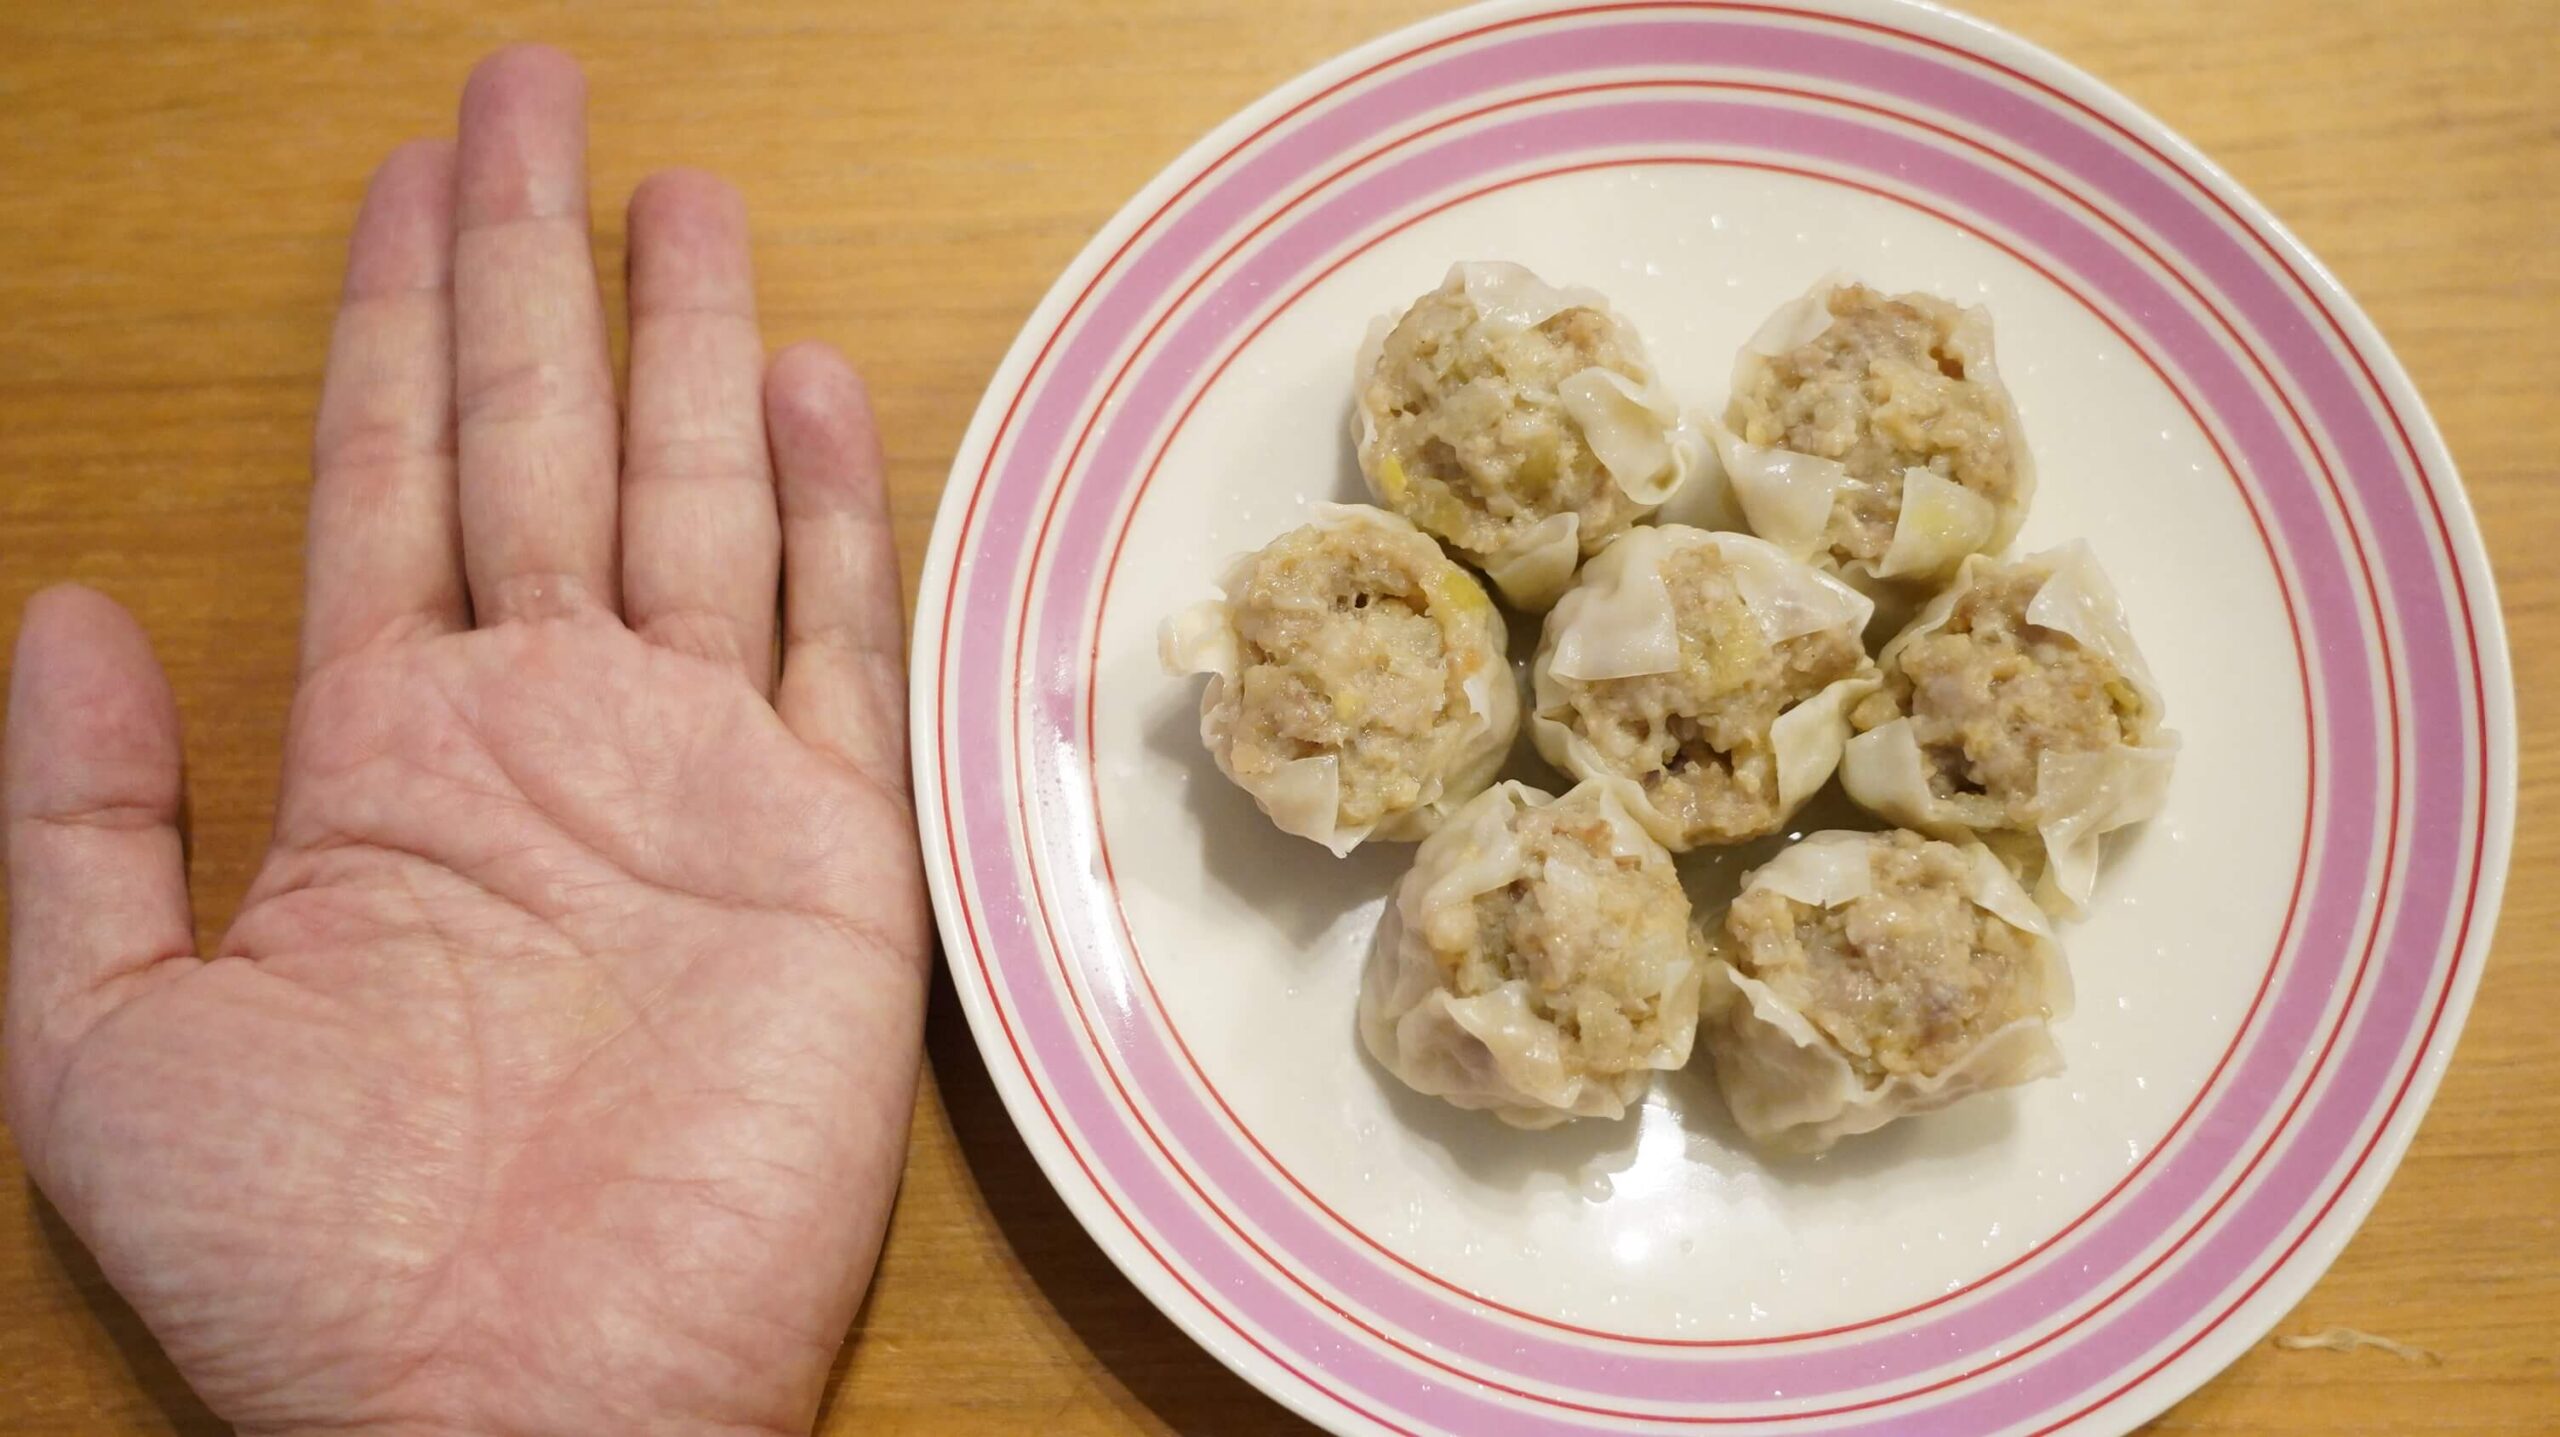 コストコのシューマイ冷凍食品「贅沢焼売」と私の手を比較した写真